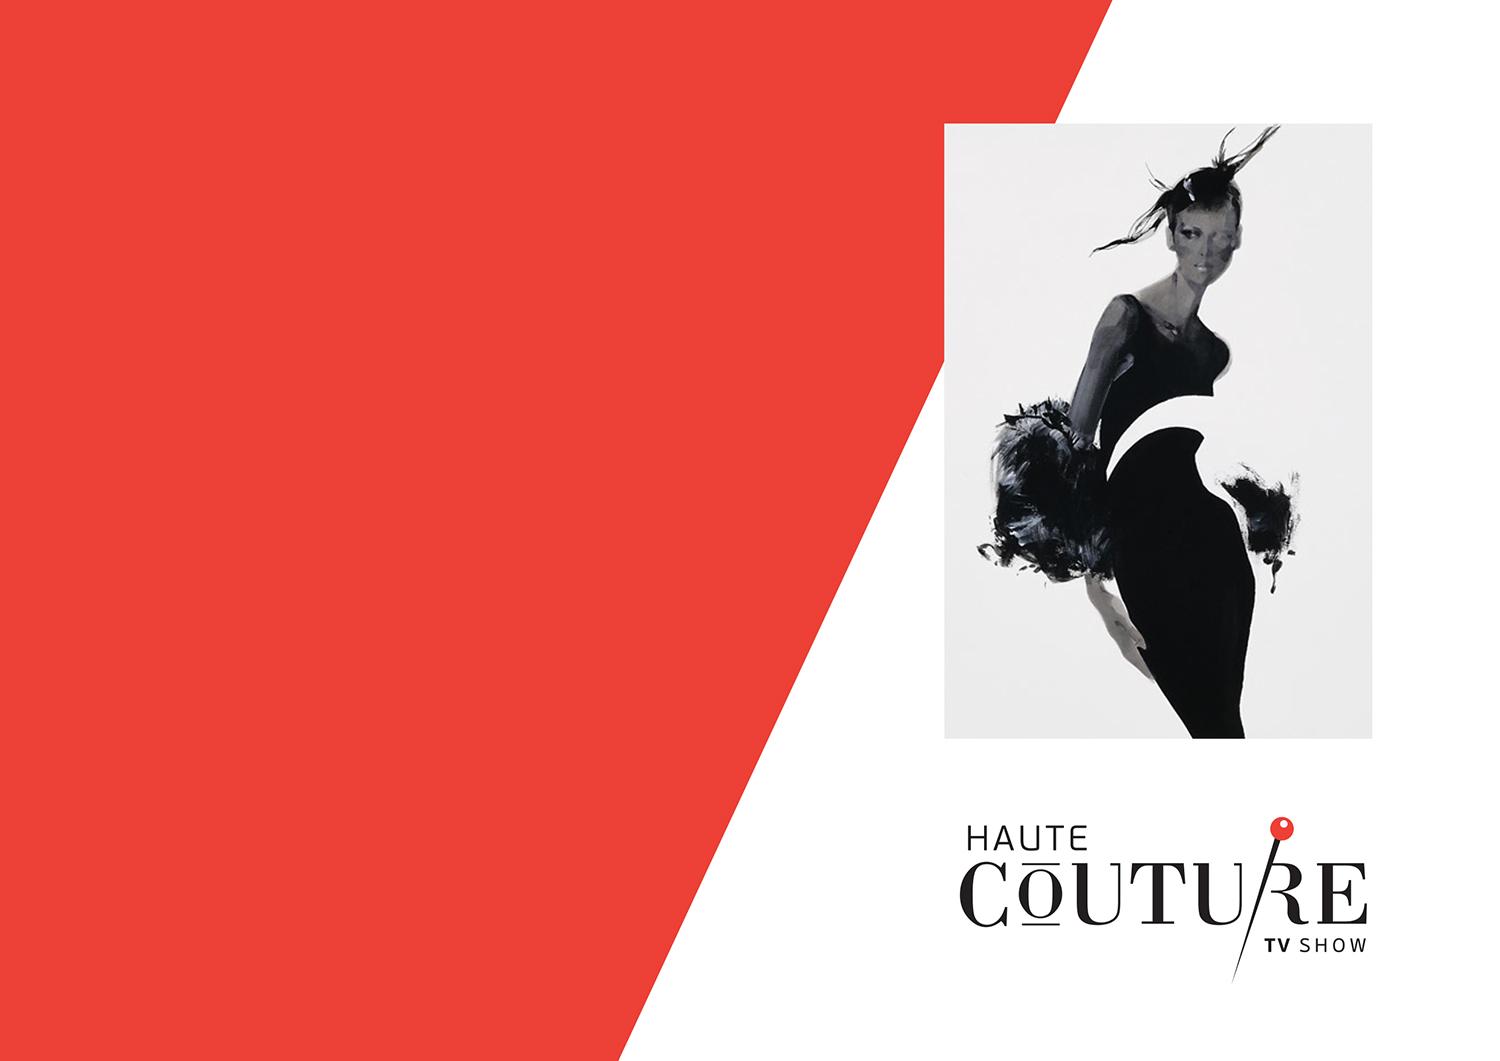 В Молдове стартует проект Haute Couture